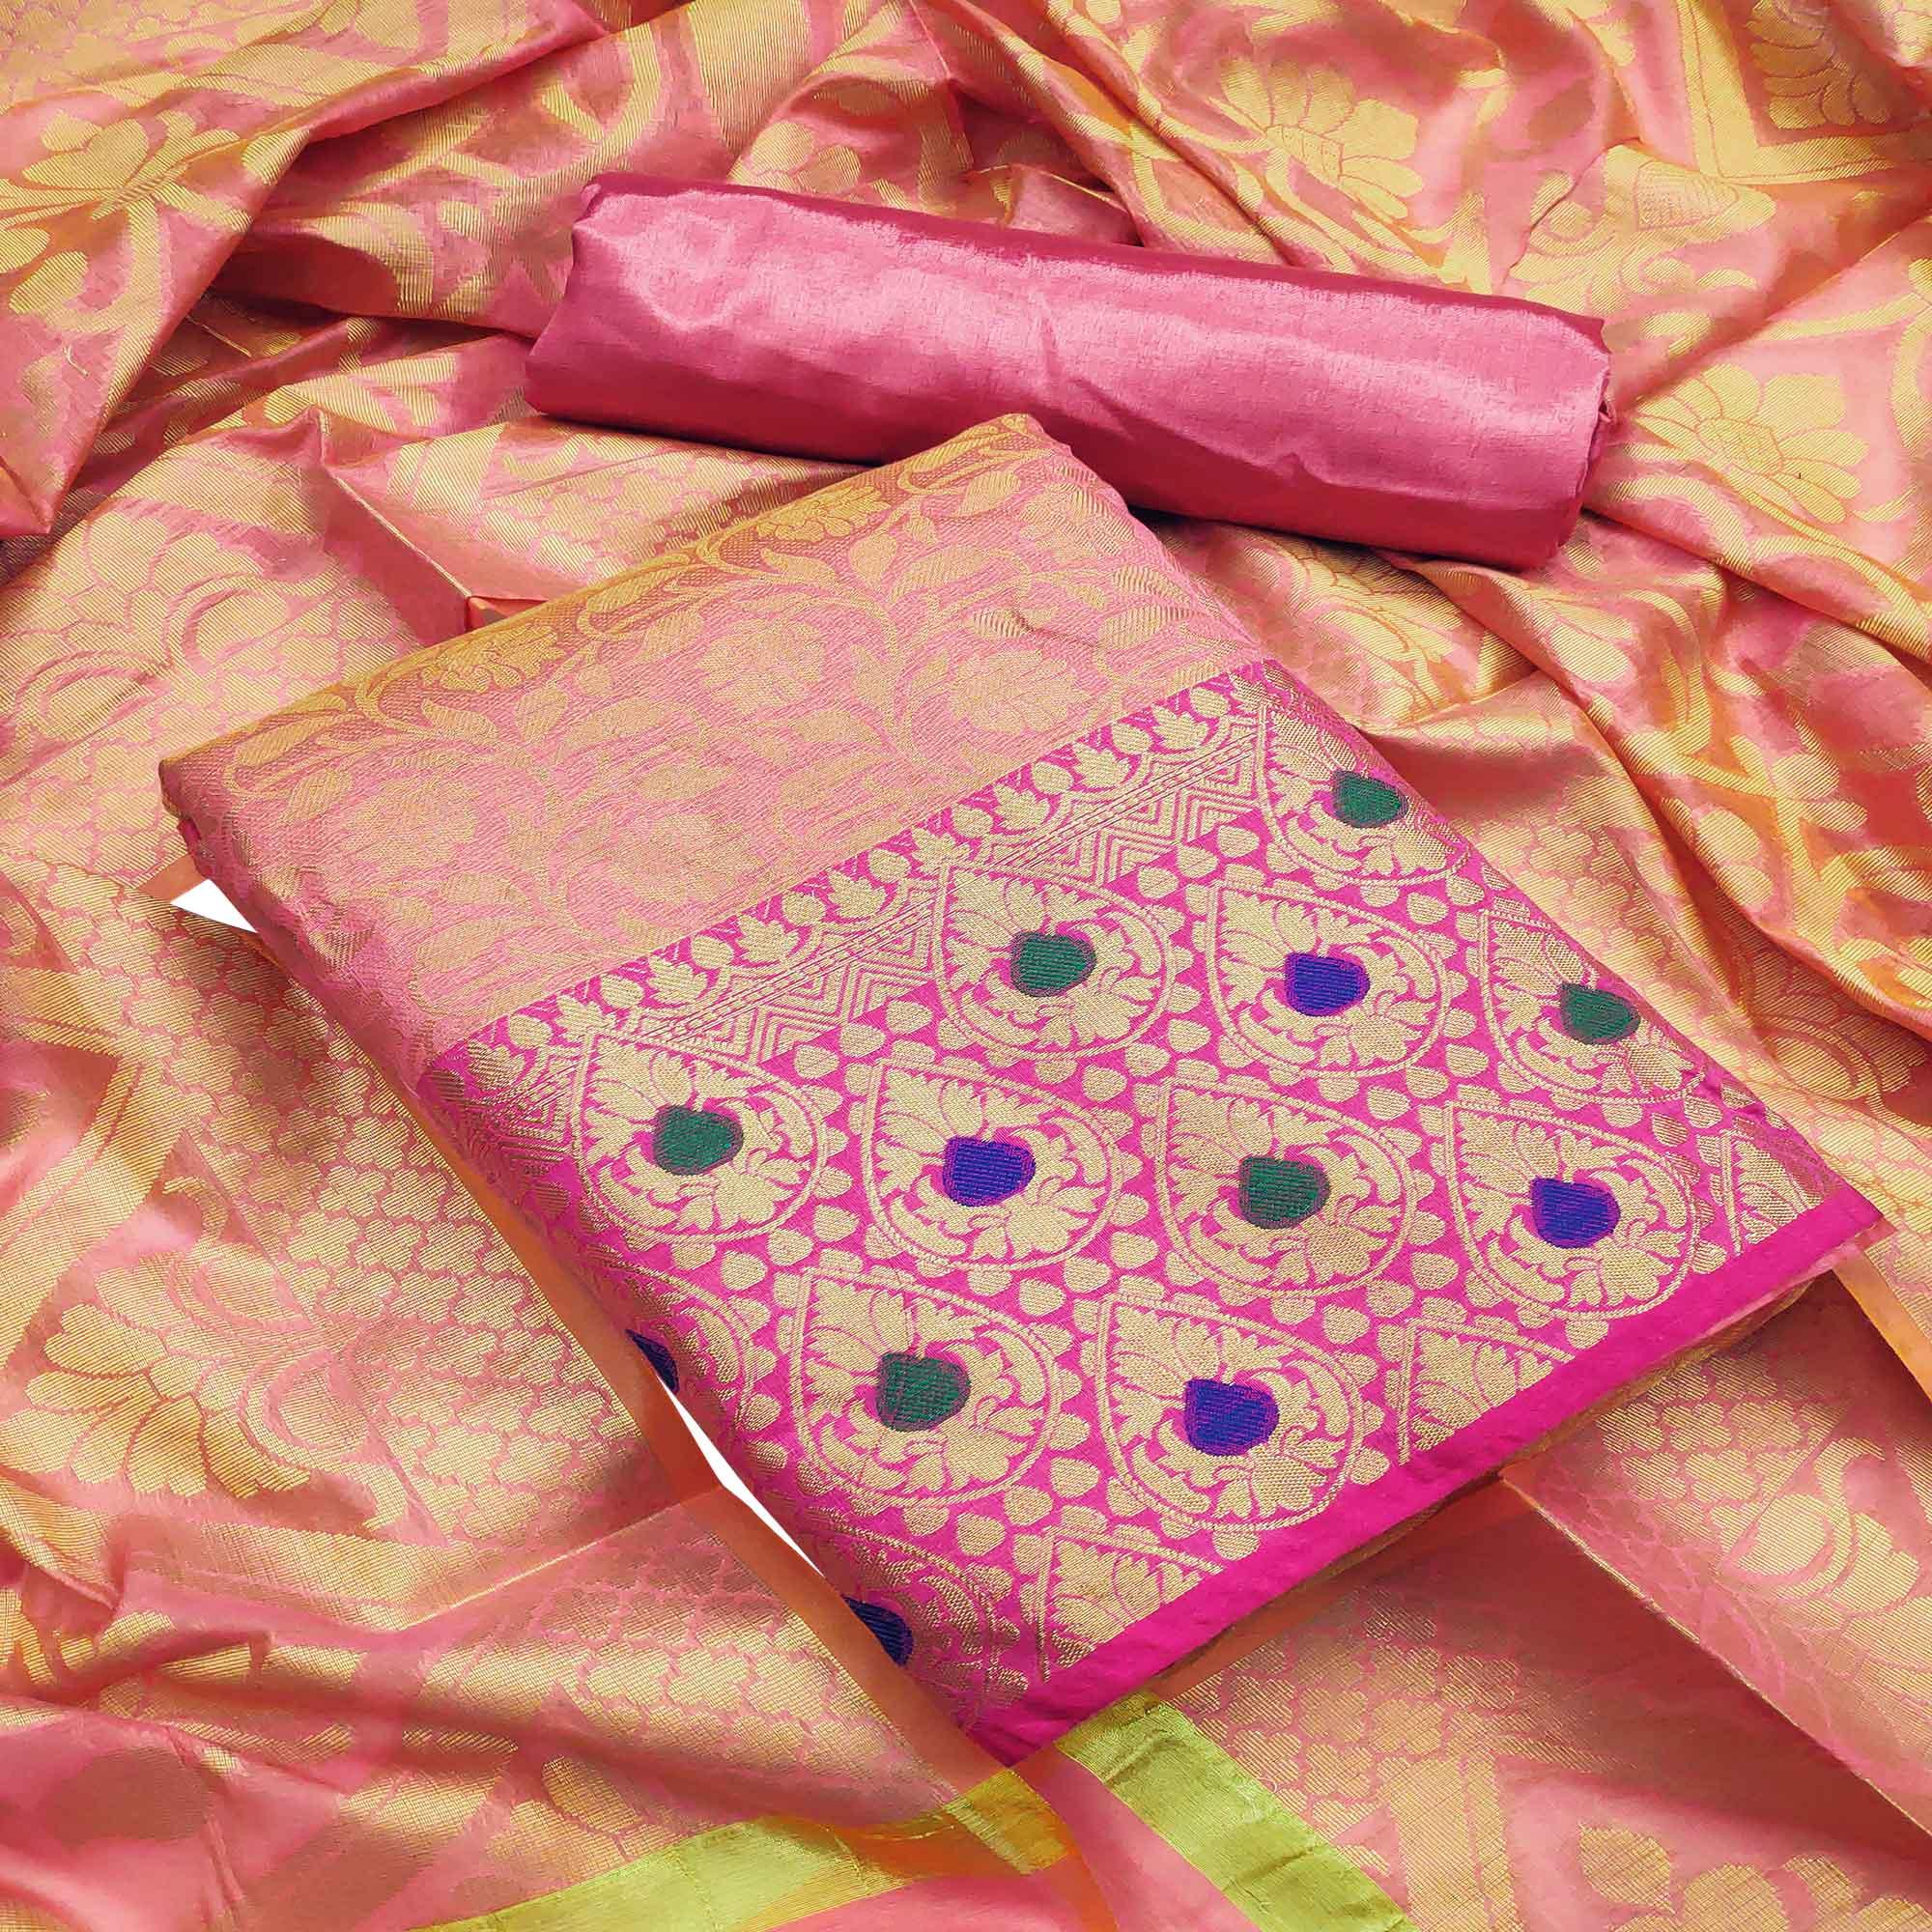 Flamboyant Pink Colored Festive Wear Woven Heavy Banarasi Silk Dress Material - Peachmode